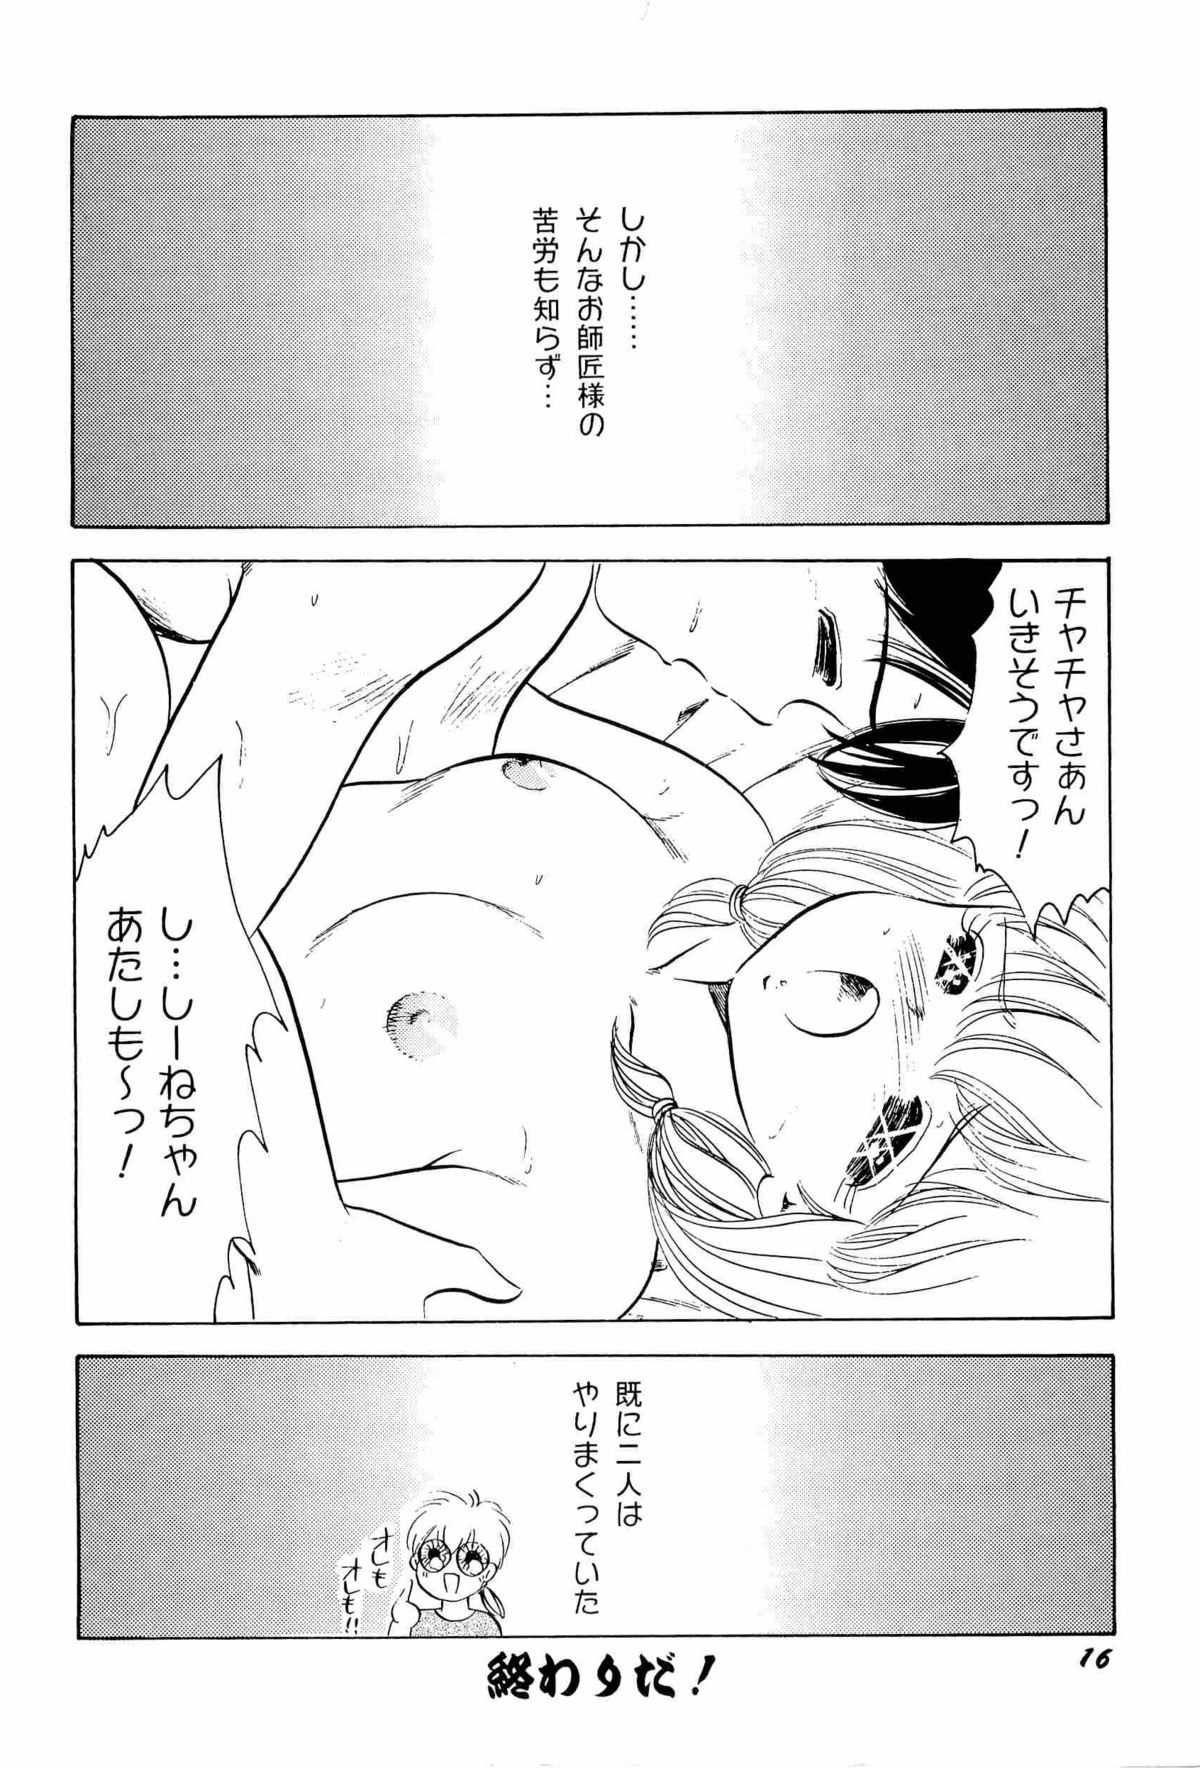 [Anthology] aniparo miki vol.2 [アンソロジー] アニパロ美姫 2